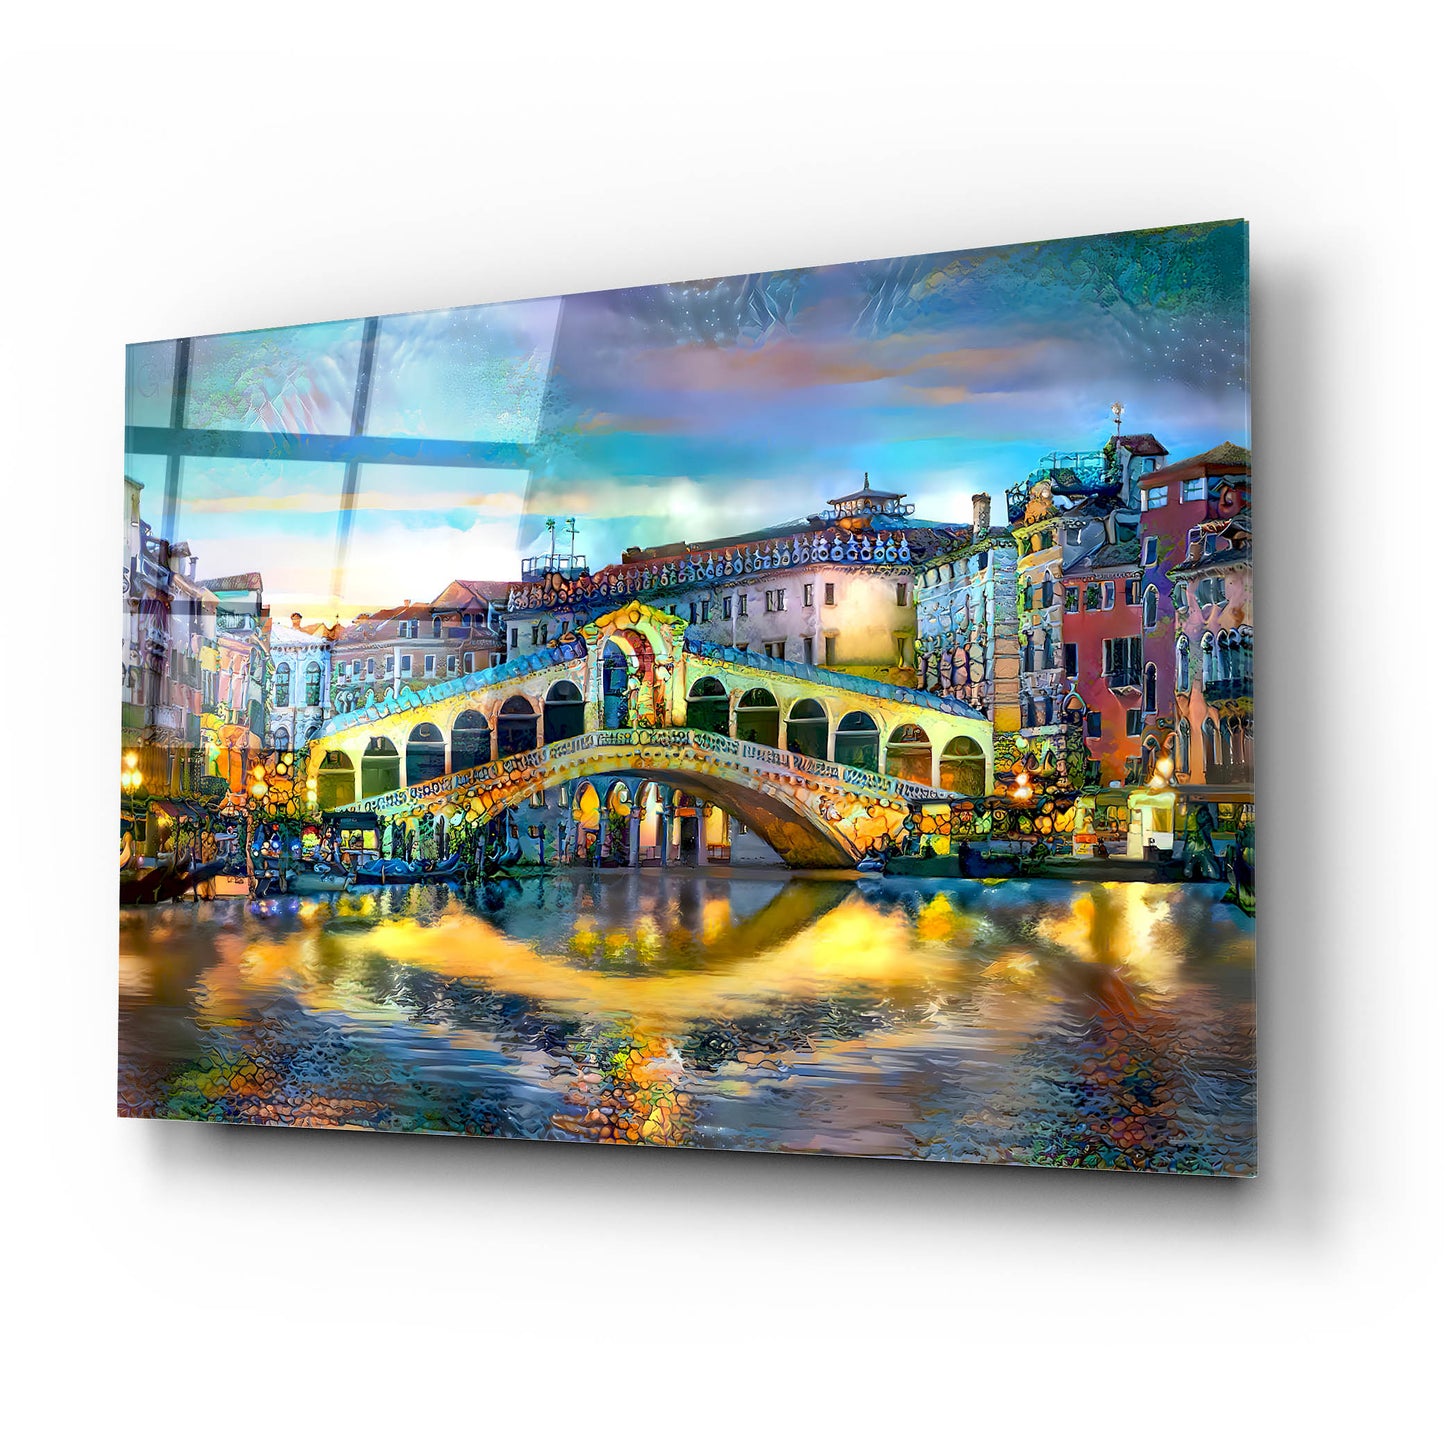 Epic Art 'Venice Italy Rialto Bridge at night' by Pedro Gavidia, Acrylic Glass Wall Art,24x16